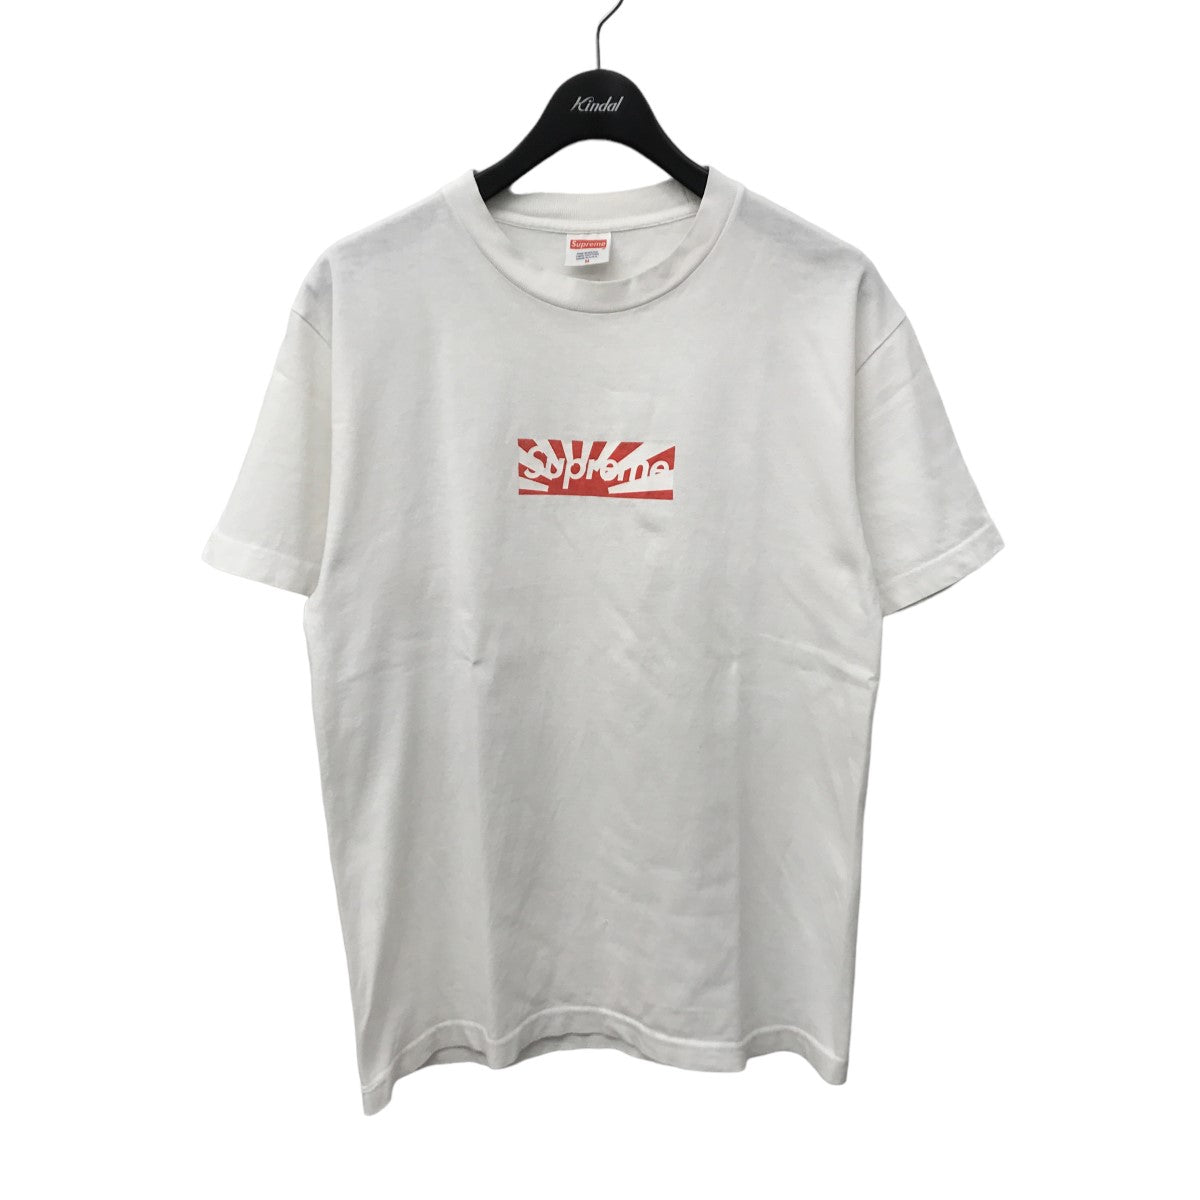 12,480円Supreme Benefit Box Logo Tee Tシャツ Mサイズ